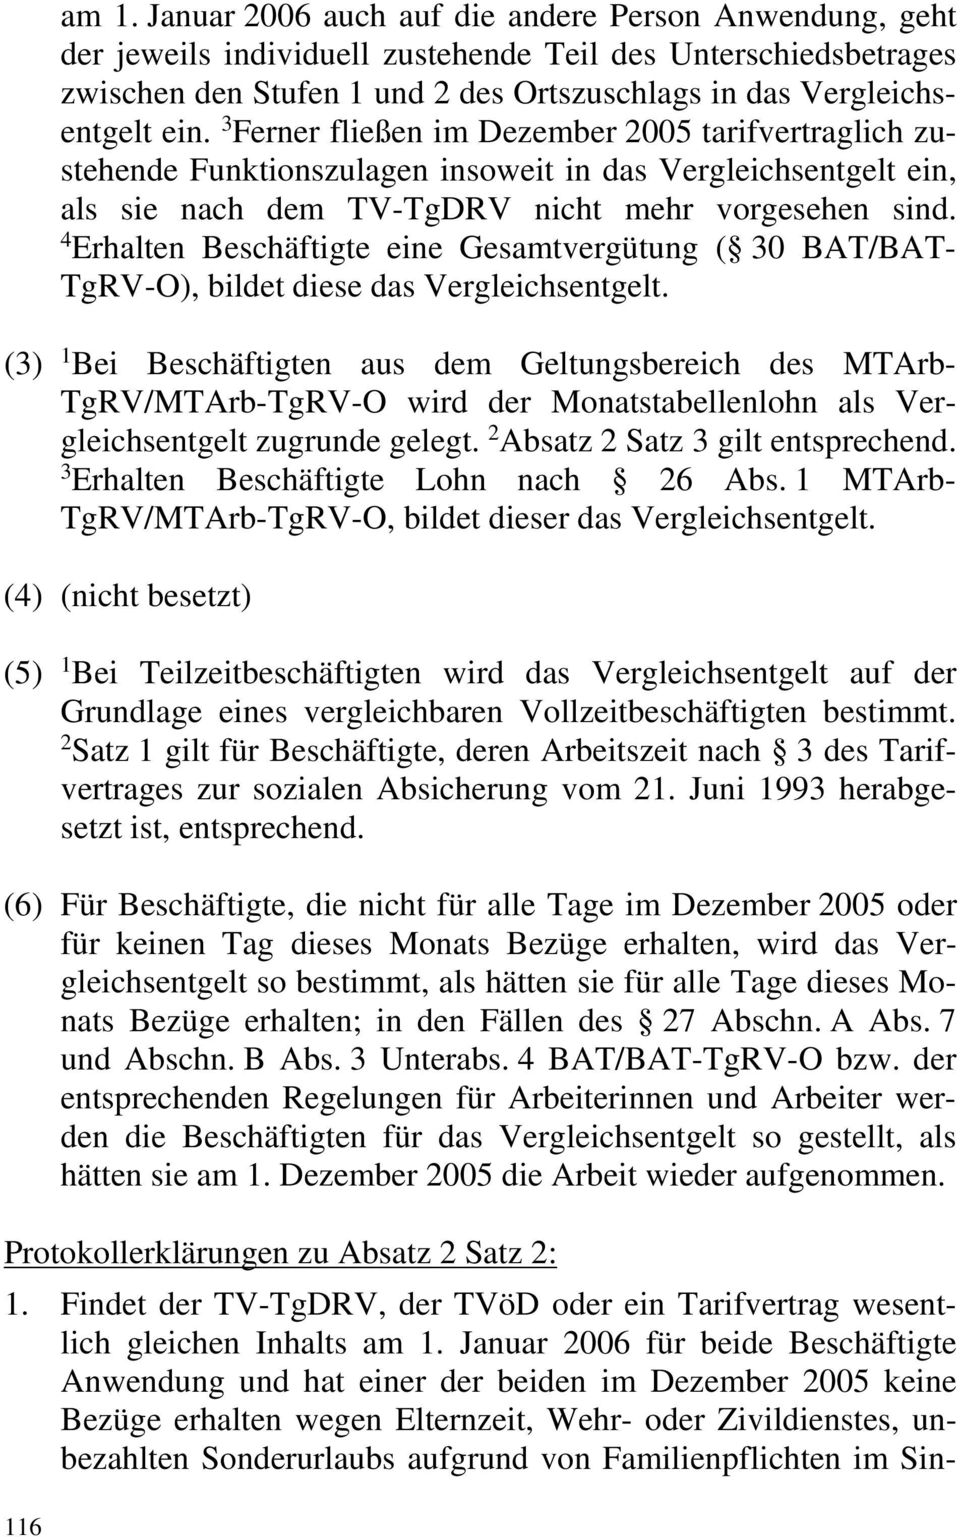 3 Ferner fließen im Dezember 2005 tarifvertraglich zustehende Funktionszulagen insoweit in das Vergleichsentgelt ein, als sie nach dem TV-TgDRV nicht mehr vorgesehen sind.